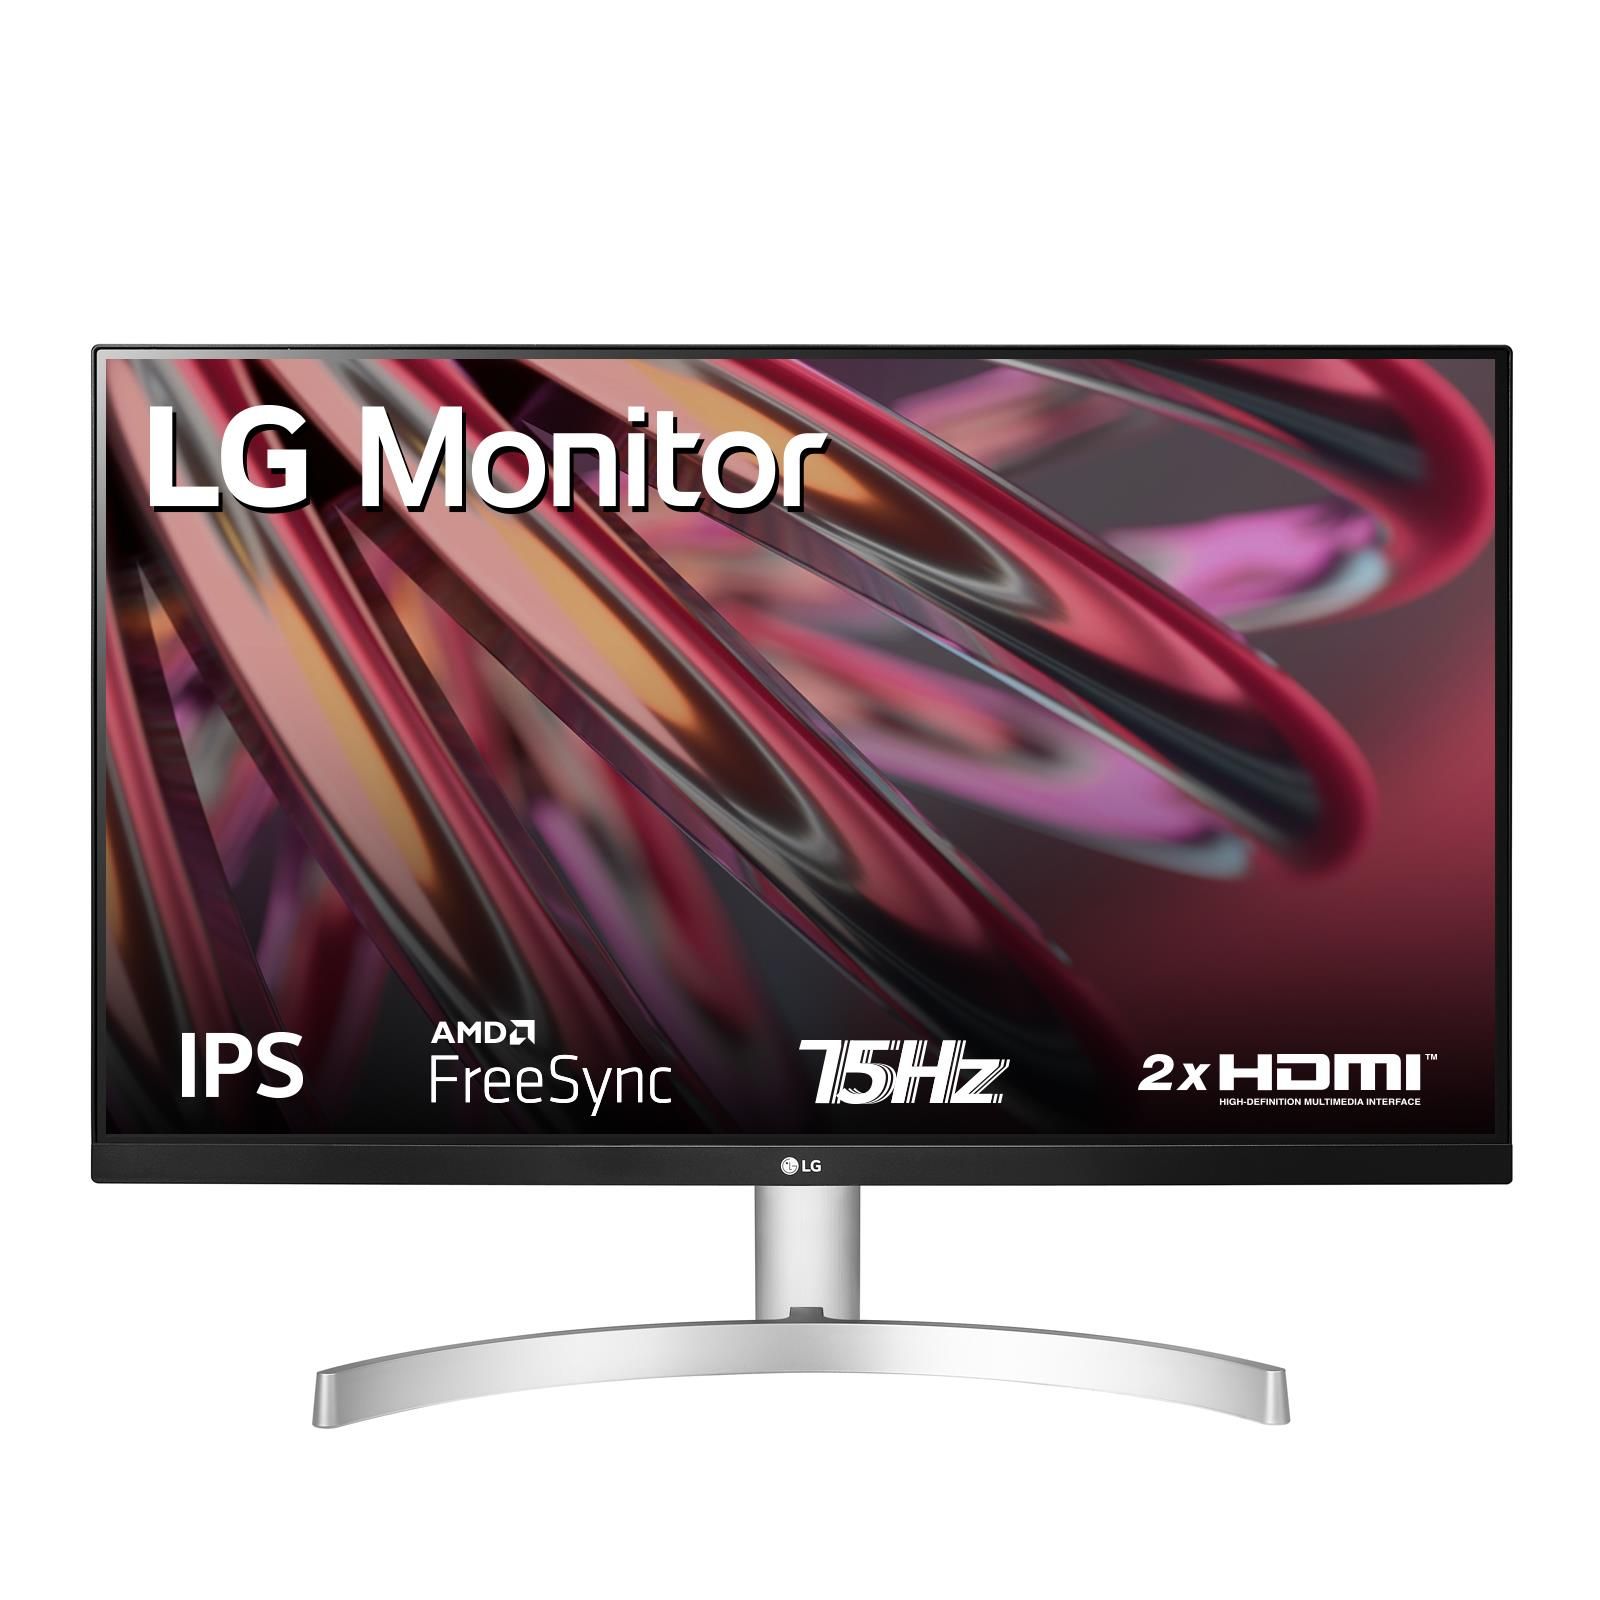 LG Monitor 24 LED